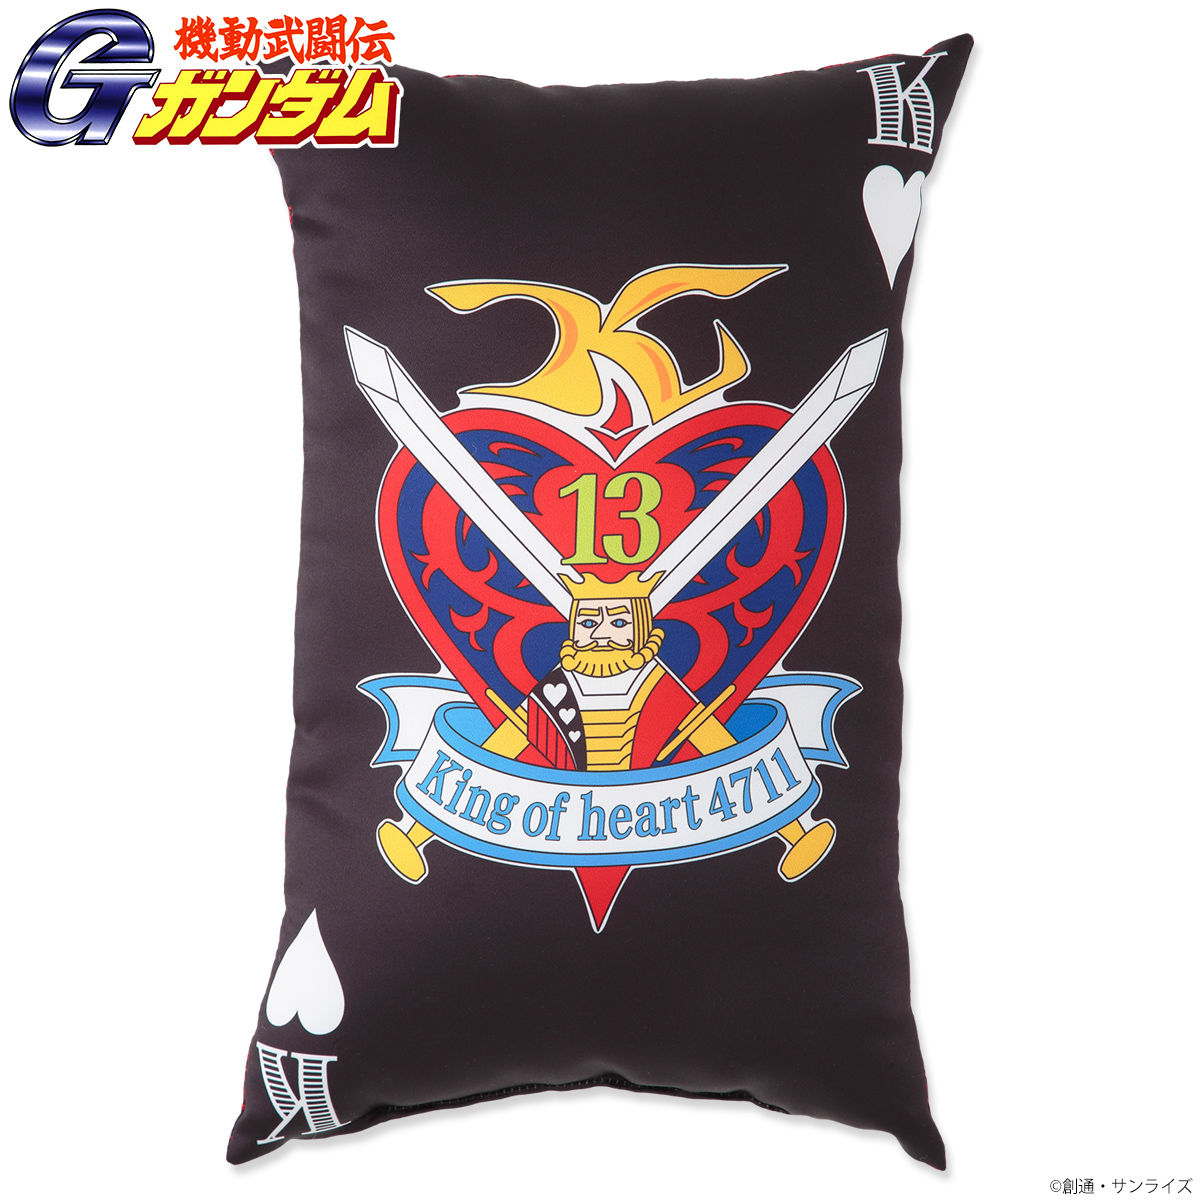 Mobile Fighter G Gundam King of Heart 4711 Cushion